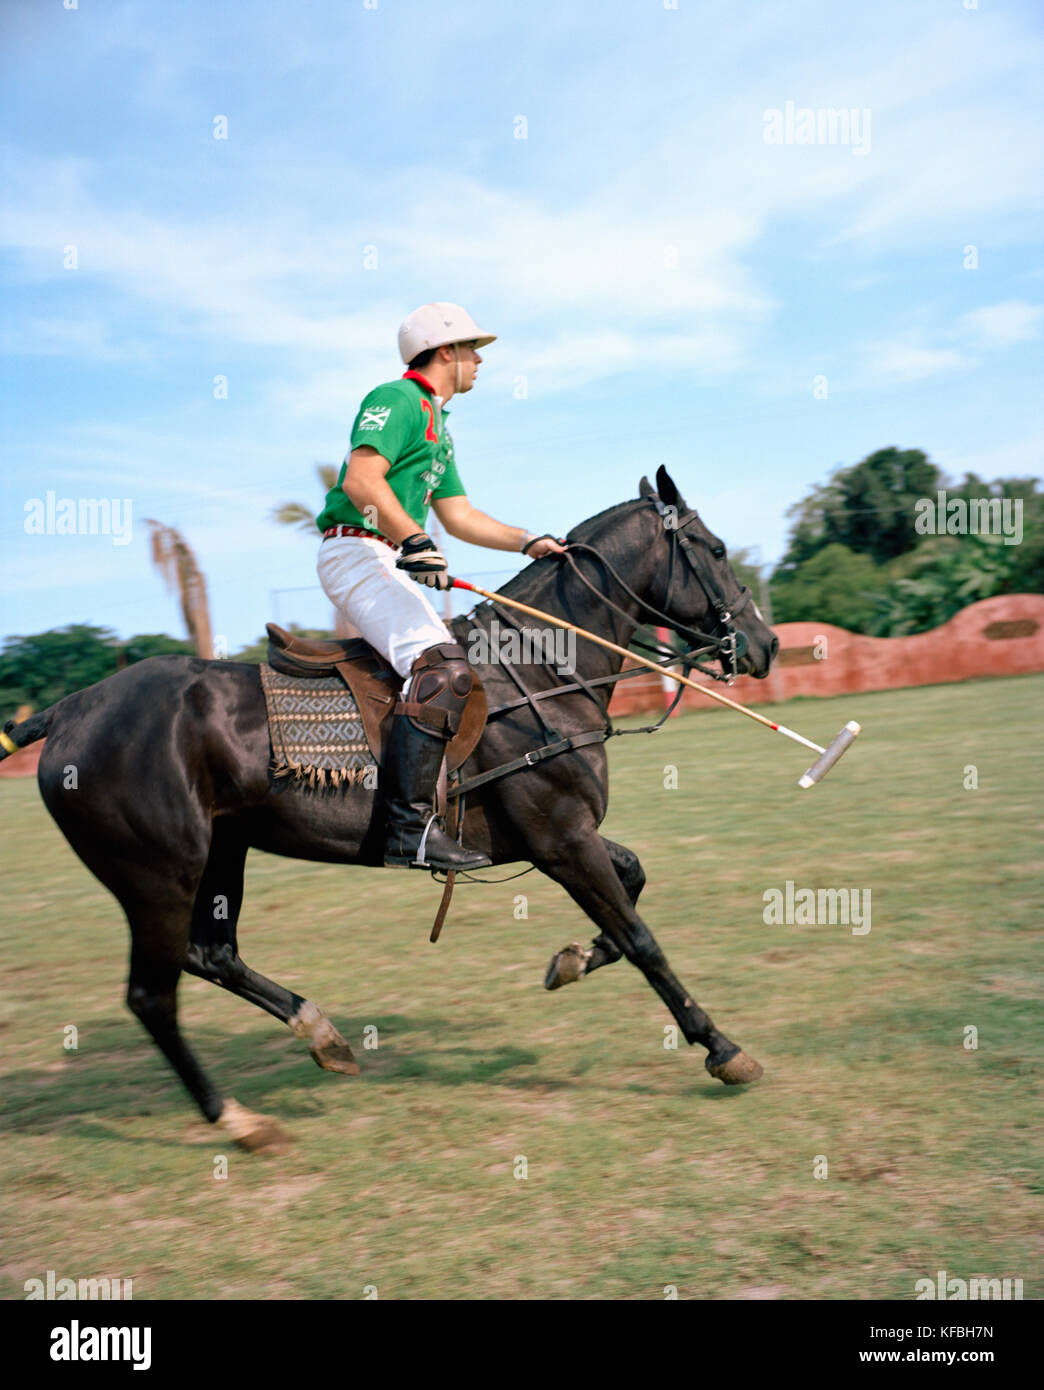 Mexiko, San Pancho, Robin Reyes auf Pferd spielen Polo von Rancho La Patrona Polo Club Stockfoto